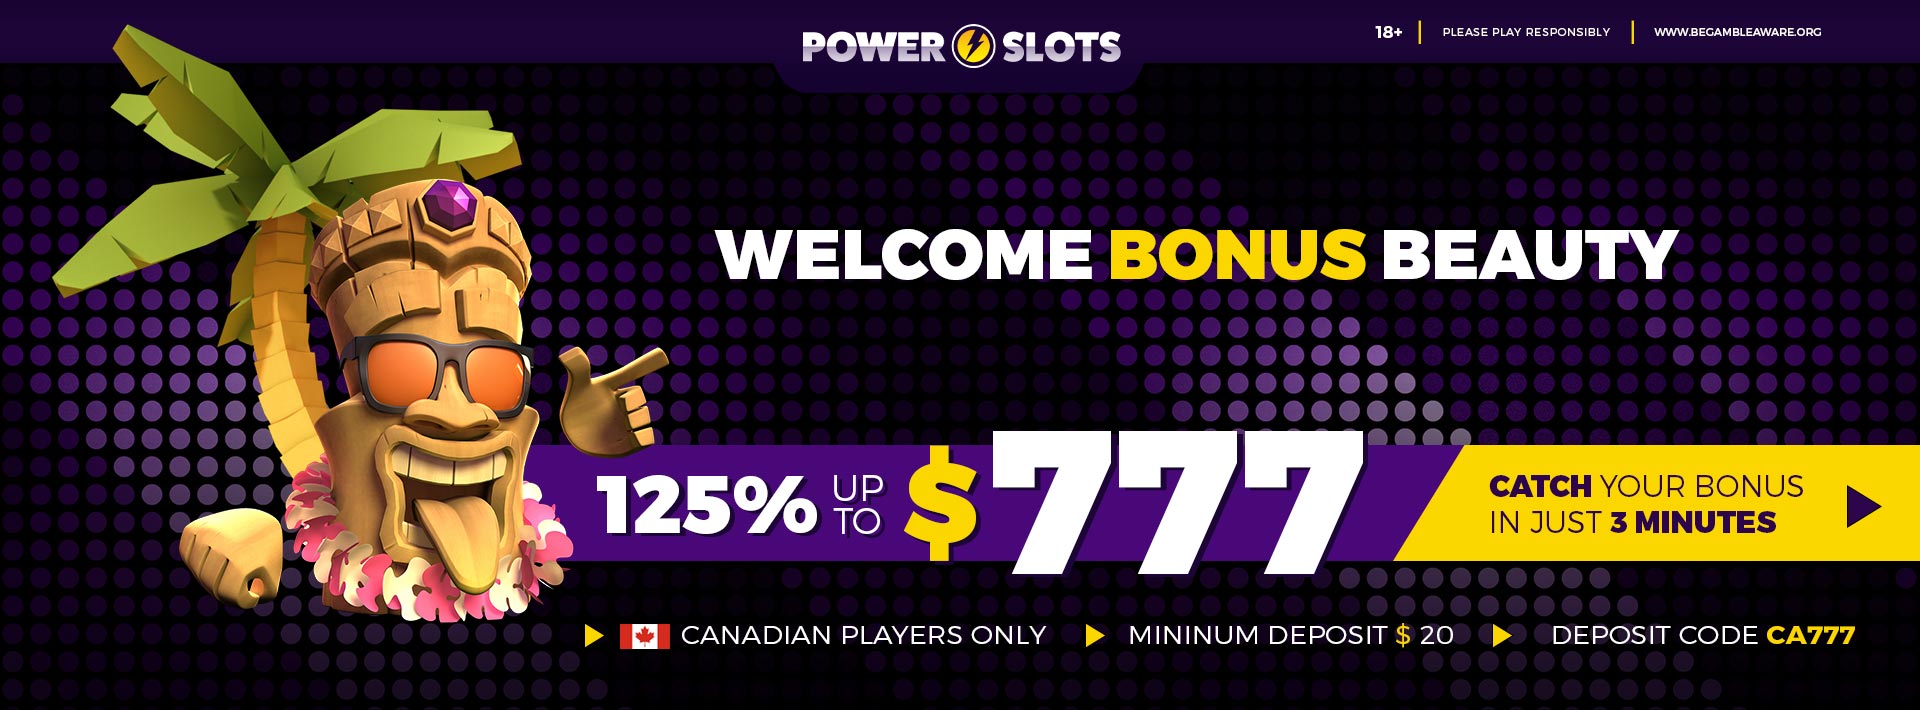 $777 Bonus | Power Slots Casino